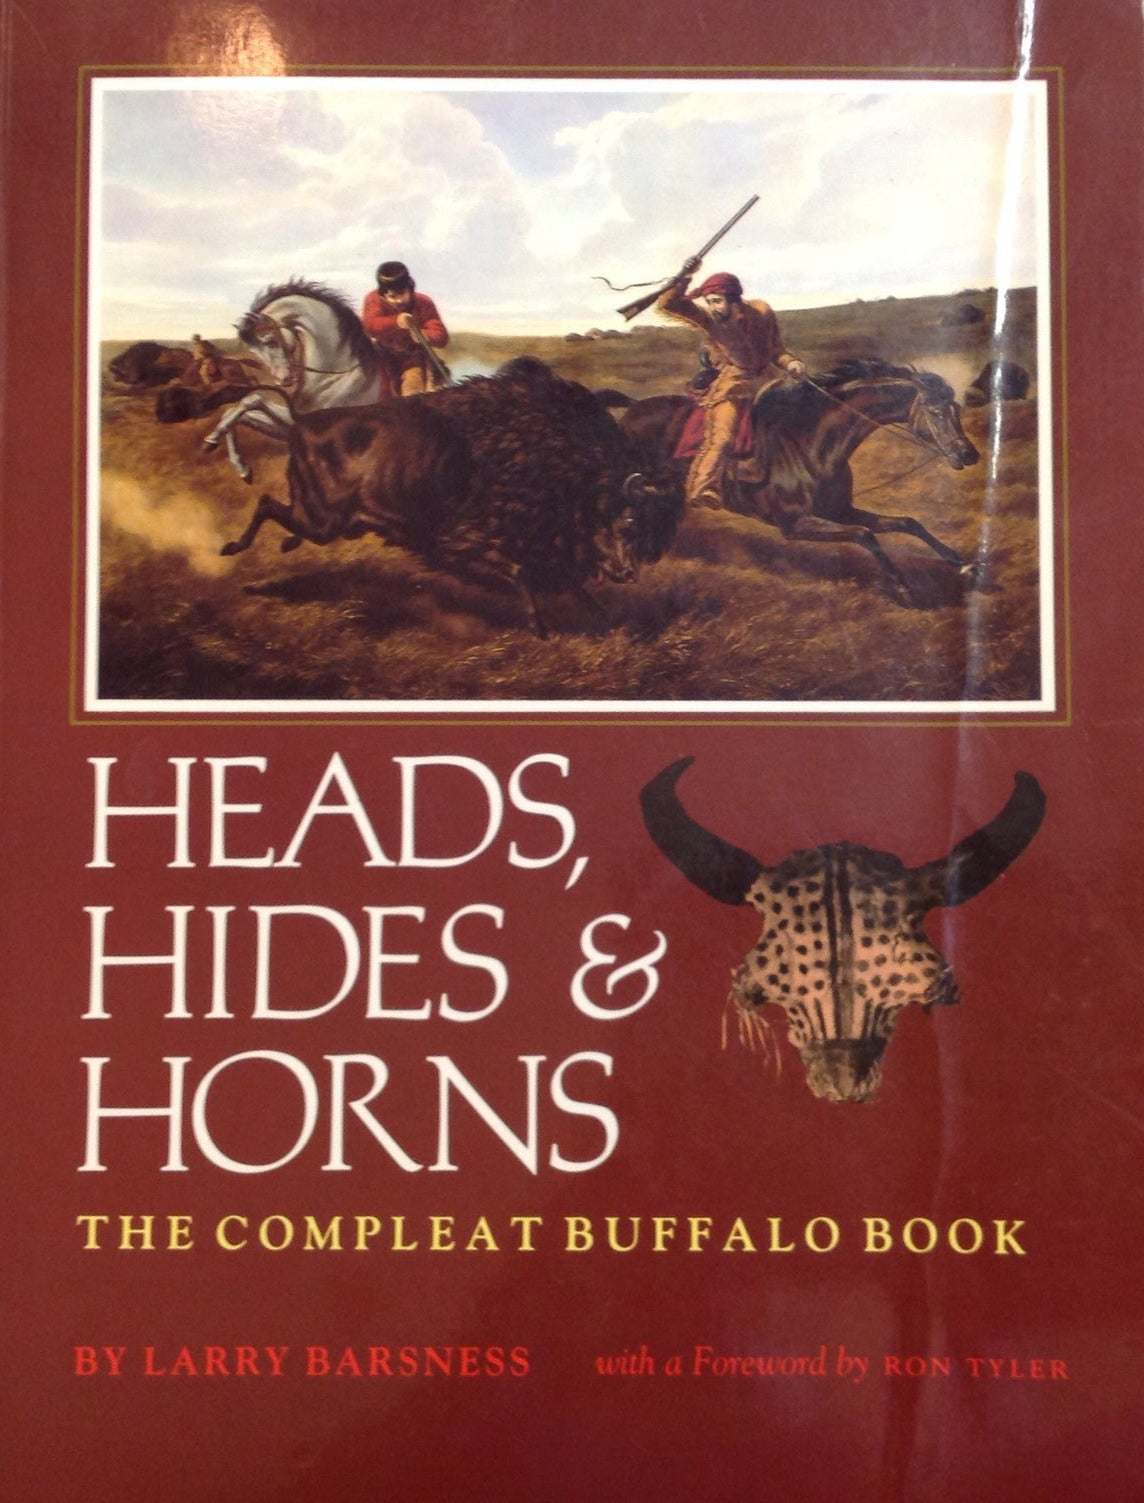 BOOKS - Heads, Hides & Horns